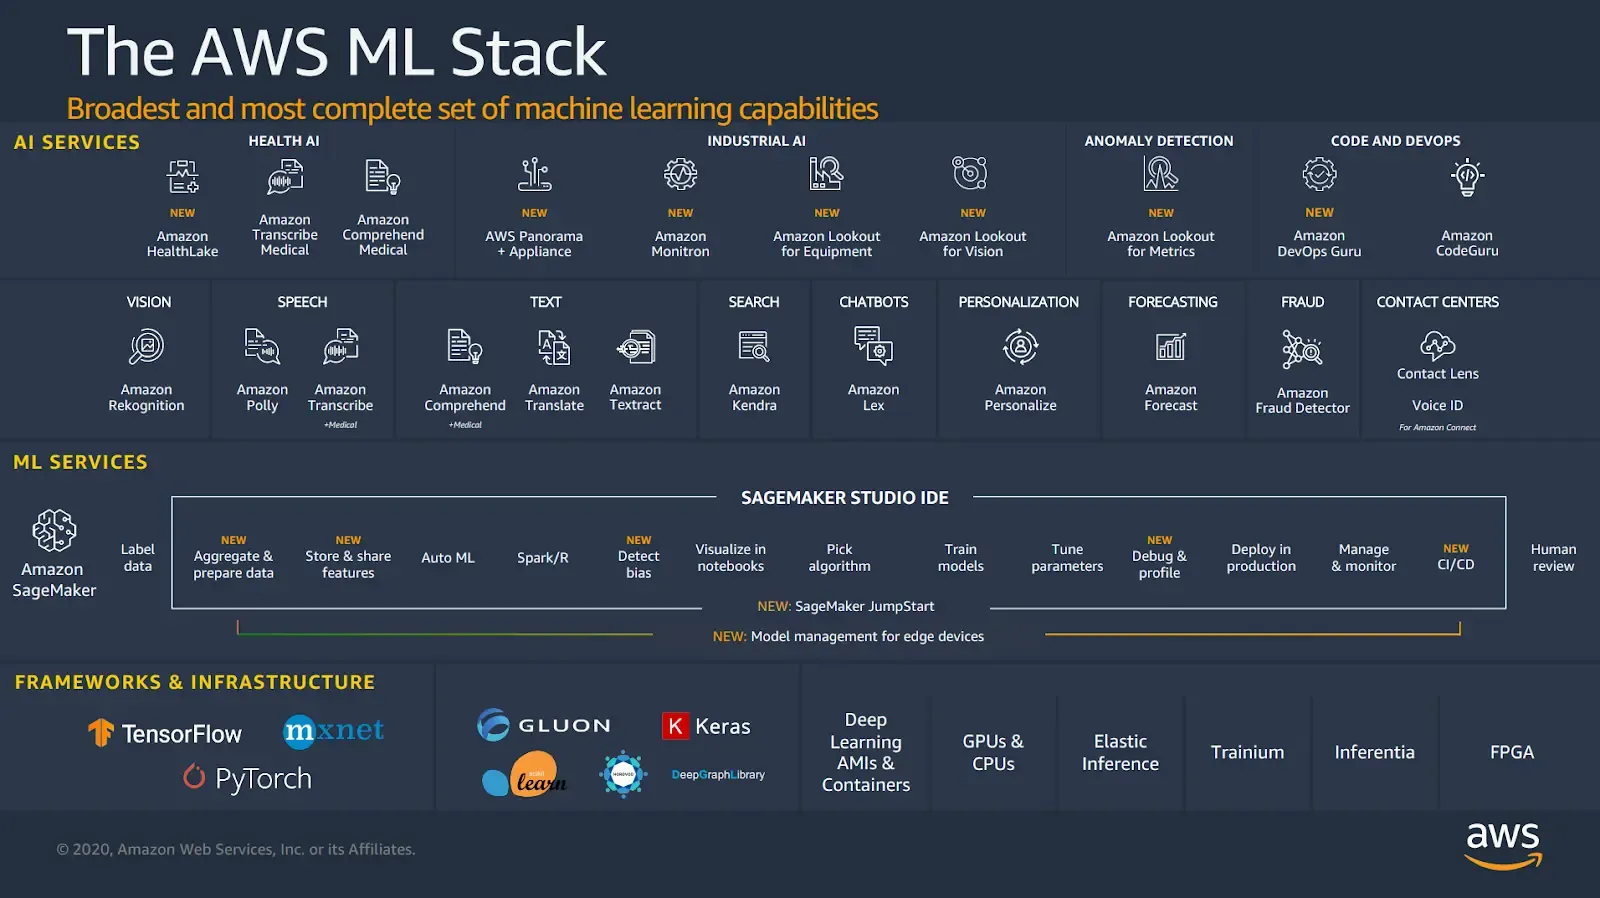 AWS ML Stack